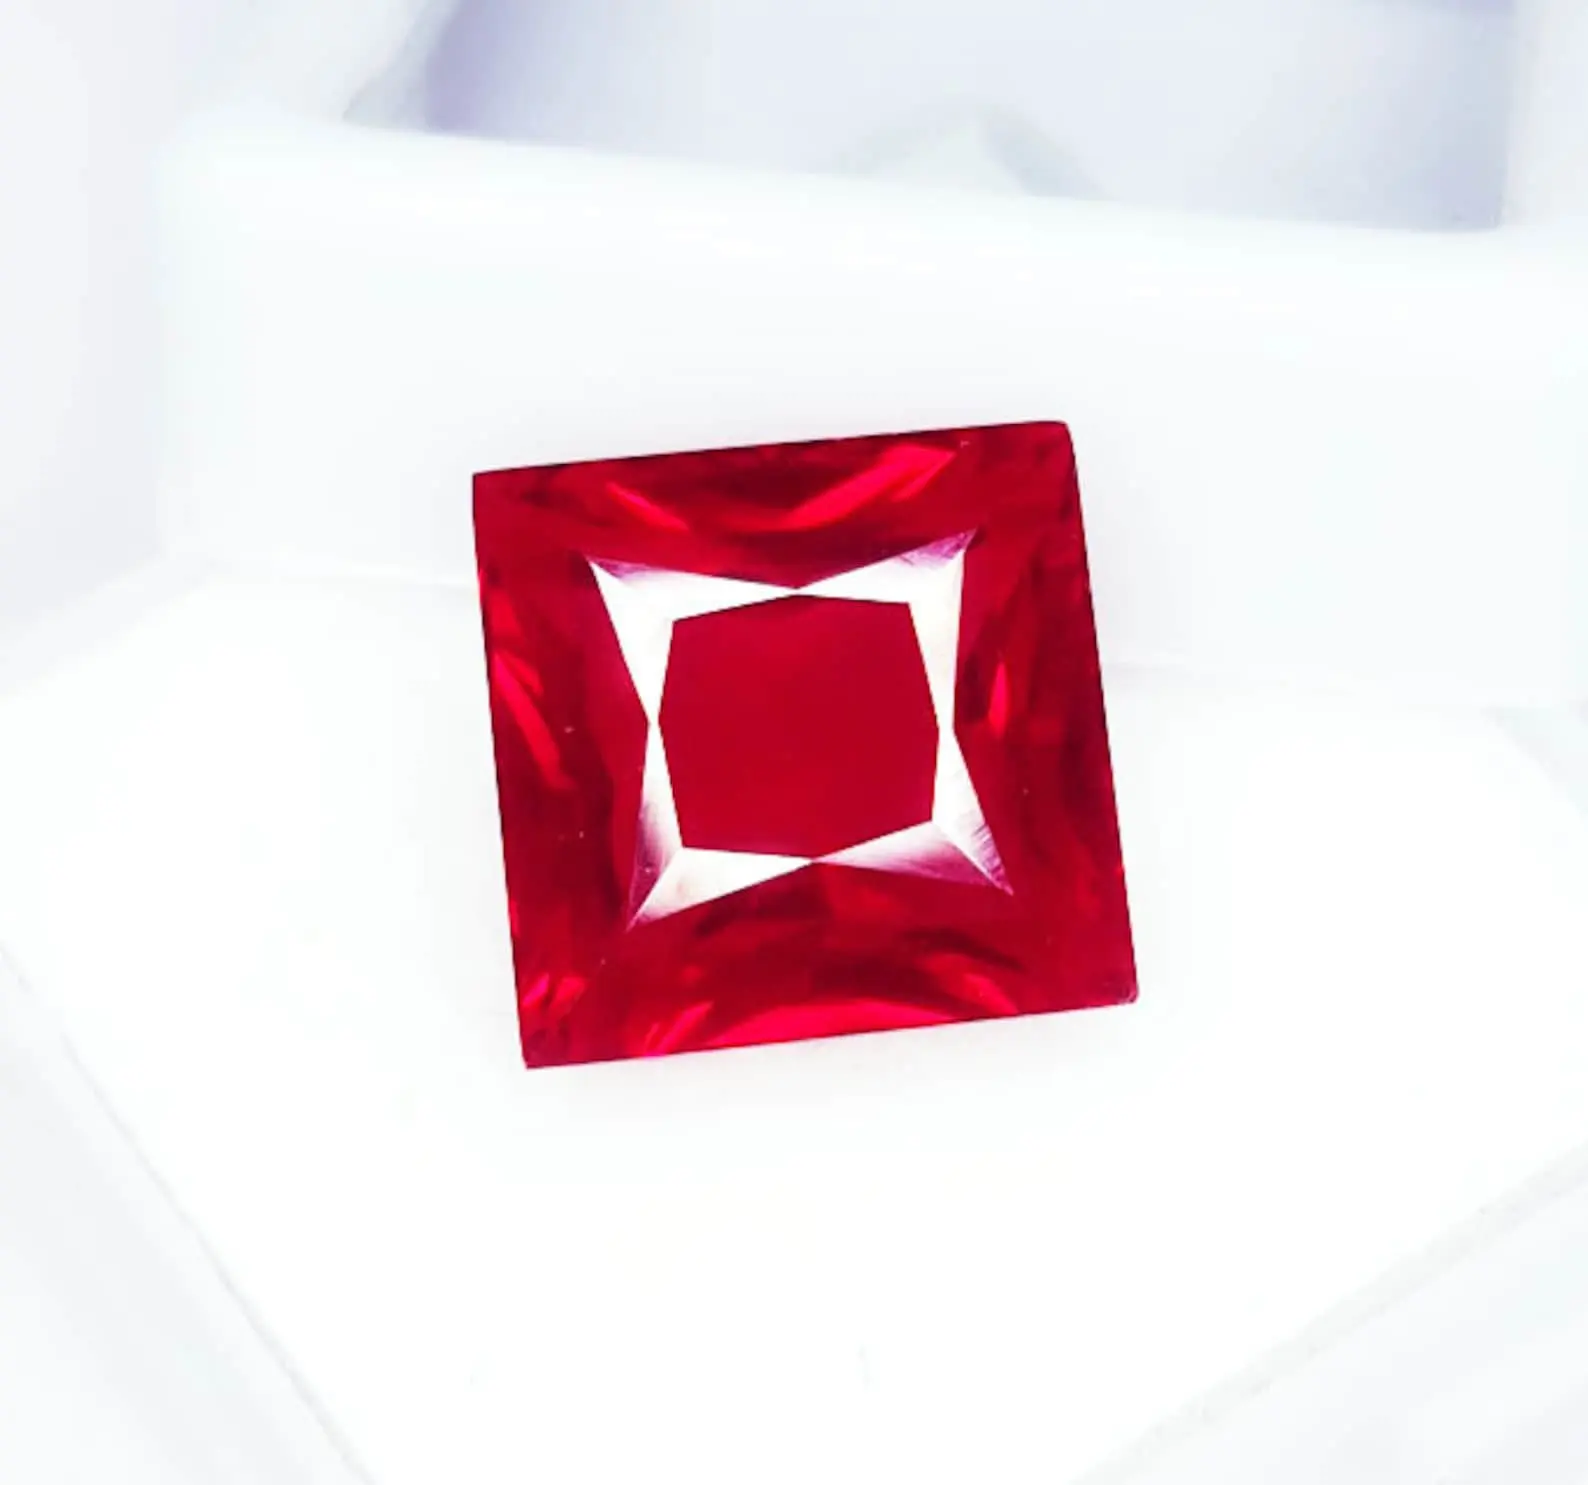 Rosso naturale rubino gemma sciolta 9.42 Ct per anello formato rosso rubino GIL certificata principessa forma madspiant rosso trasparente rubino gemme